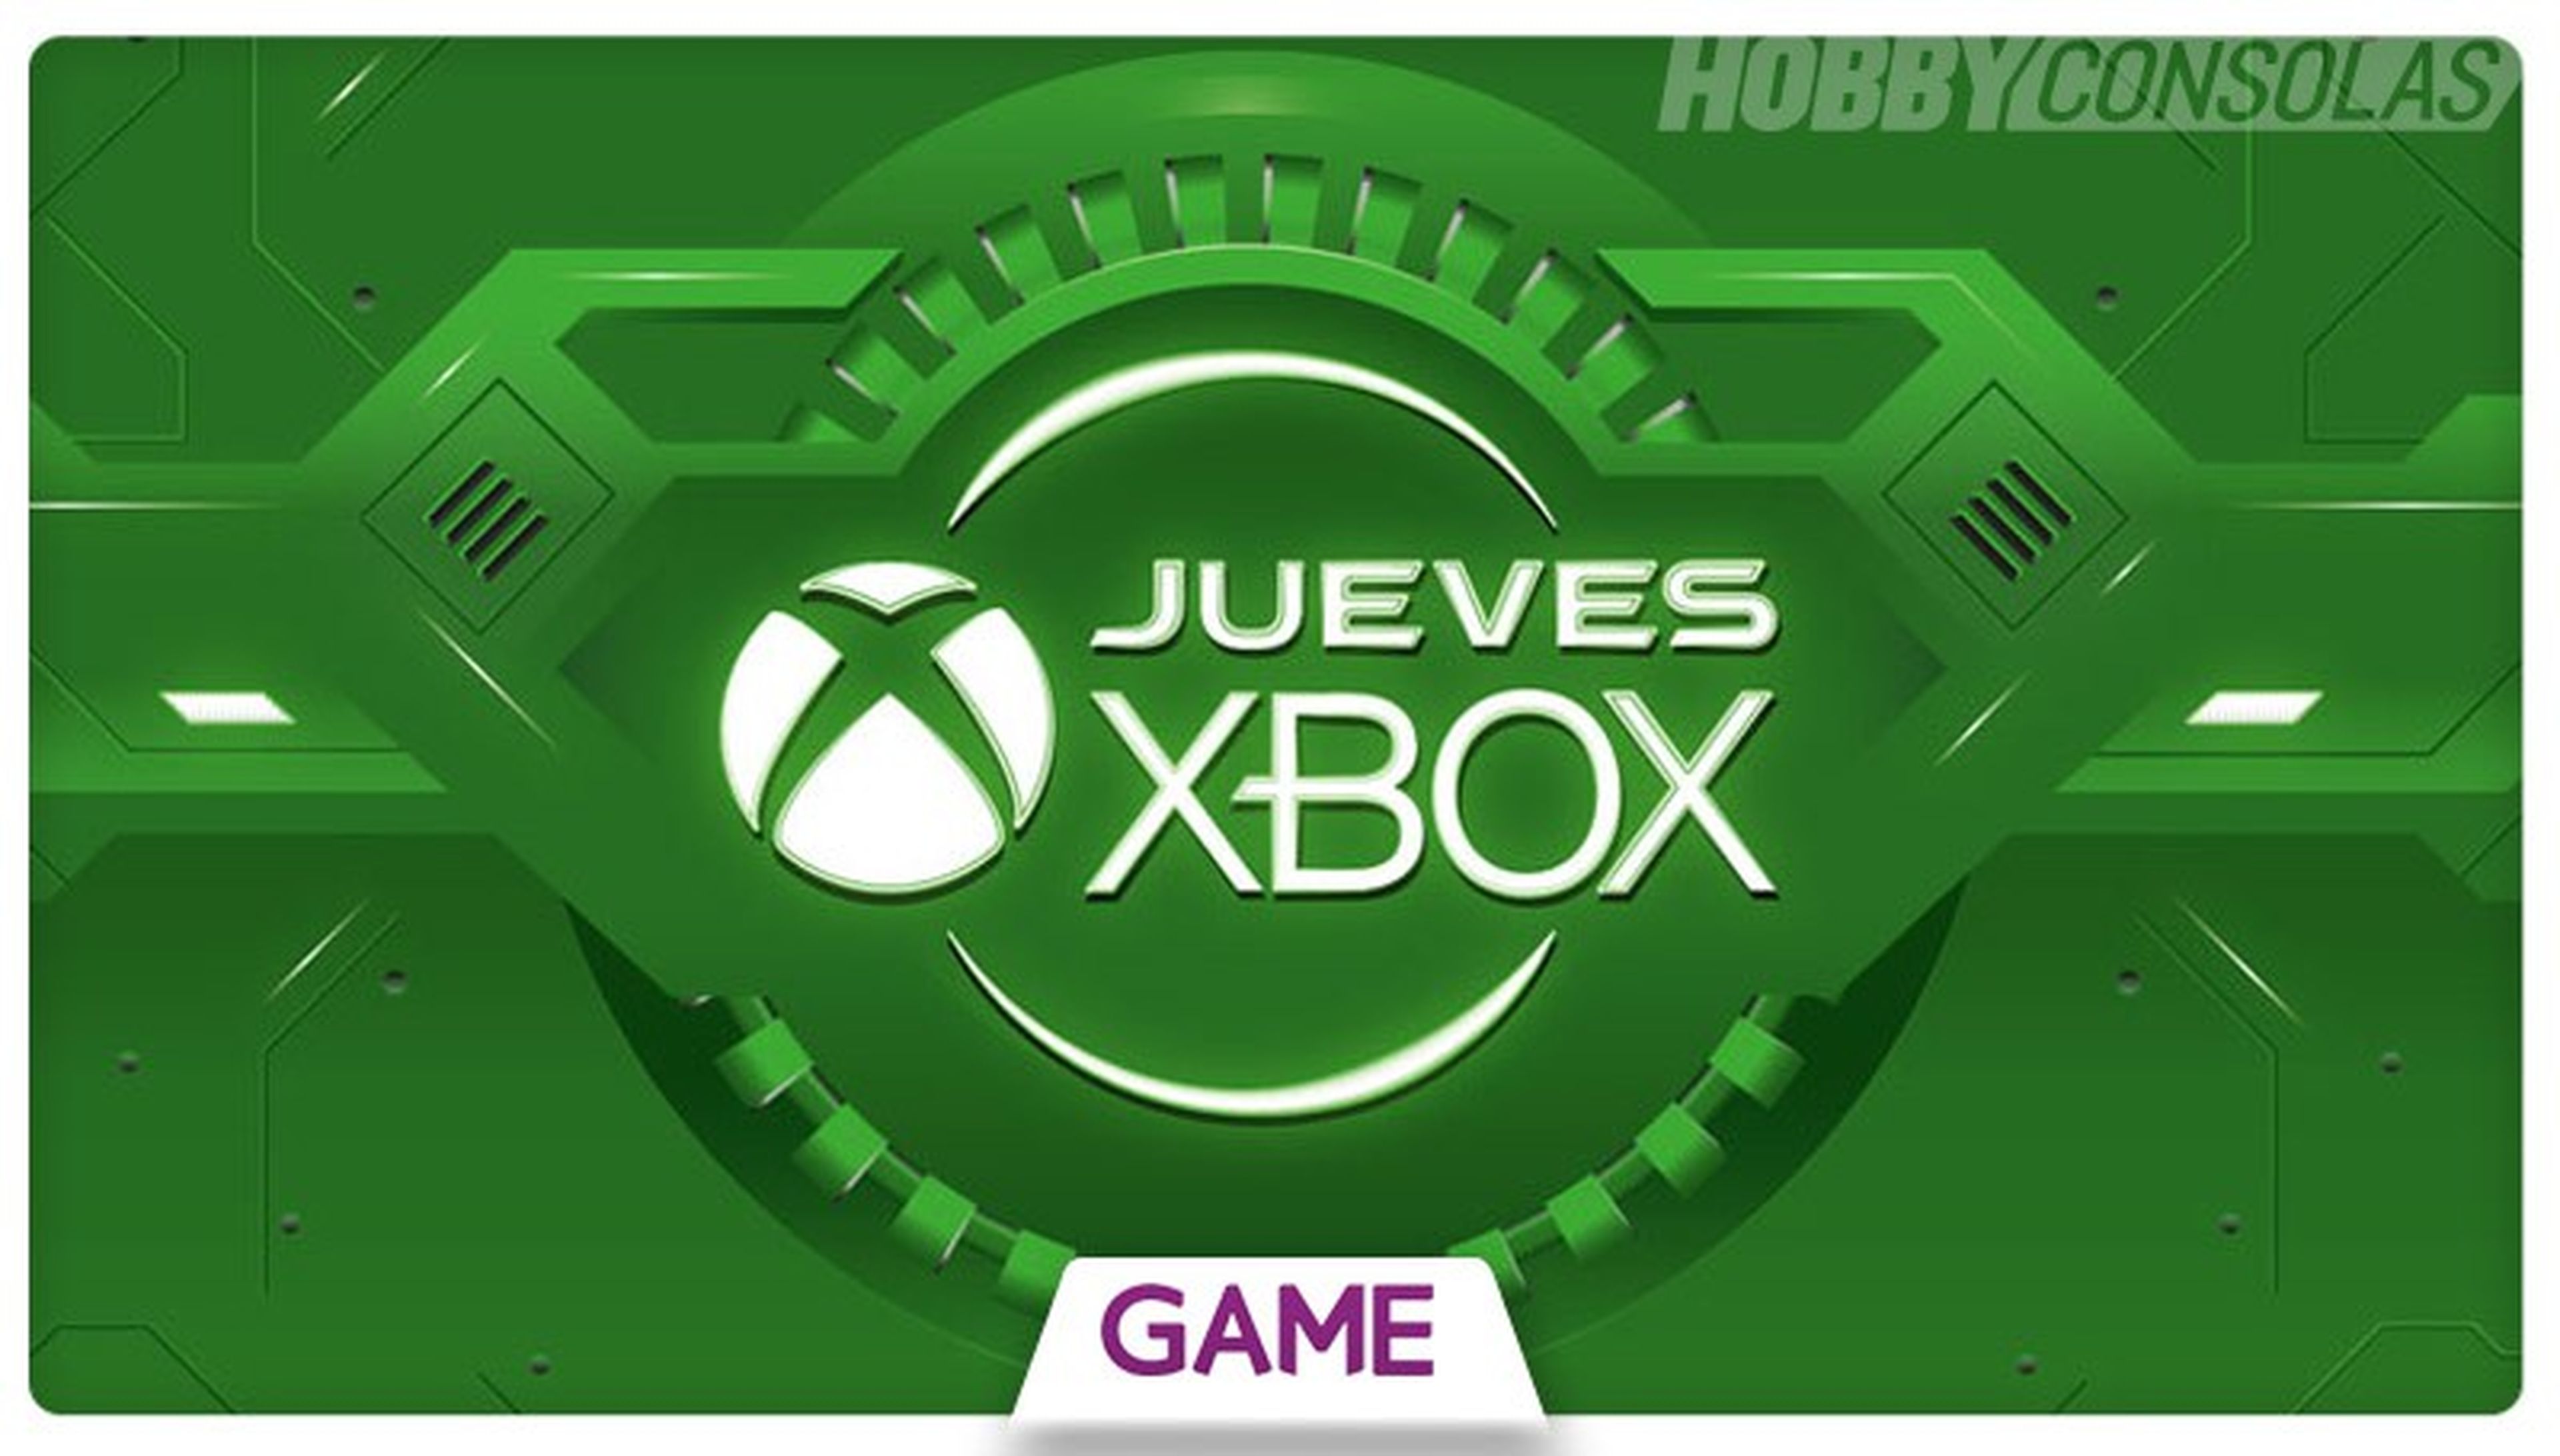 Jueves Xbox en GAME - Ofertas del 26/05/2016